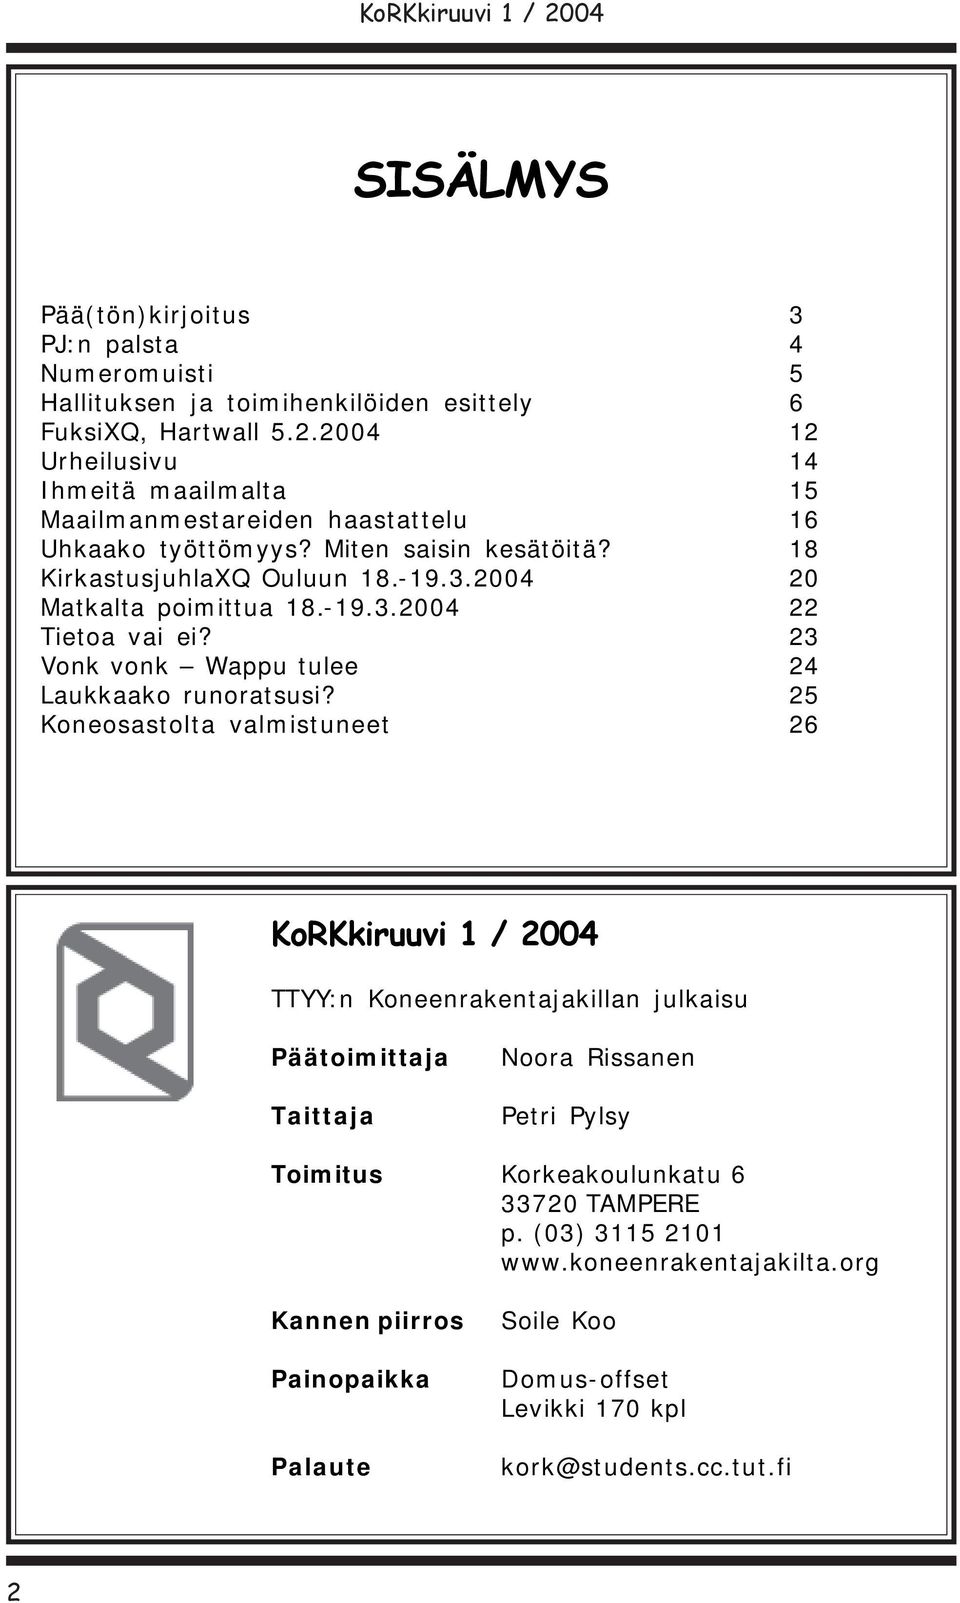 2004 20 Matkalta poimittua 18.-19.3.2004 22 Tietoa vai ei? 23 Vonk vonk Wappu tulee 24 Laukkaako runoratsusi?